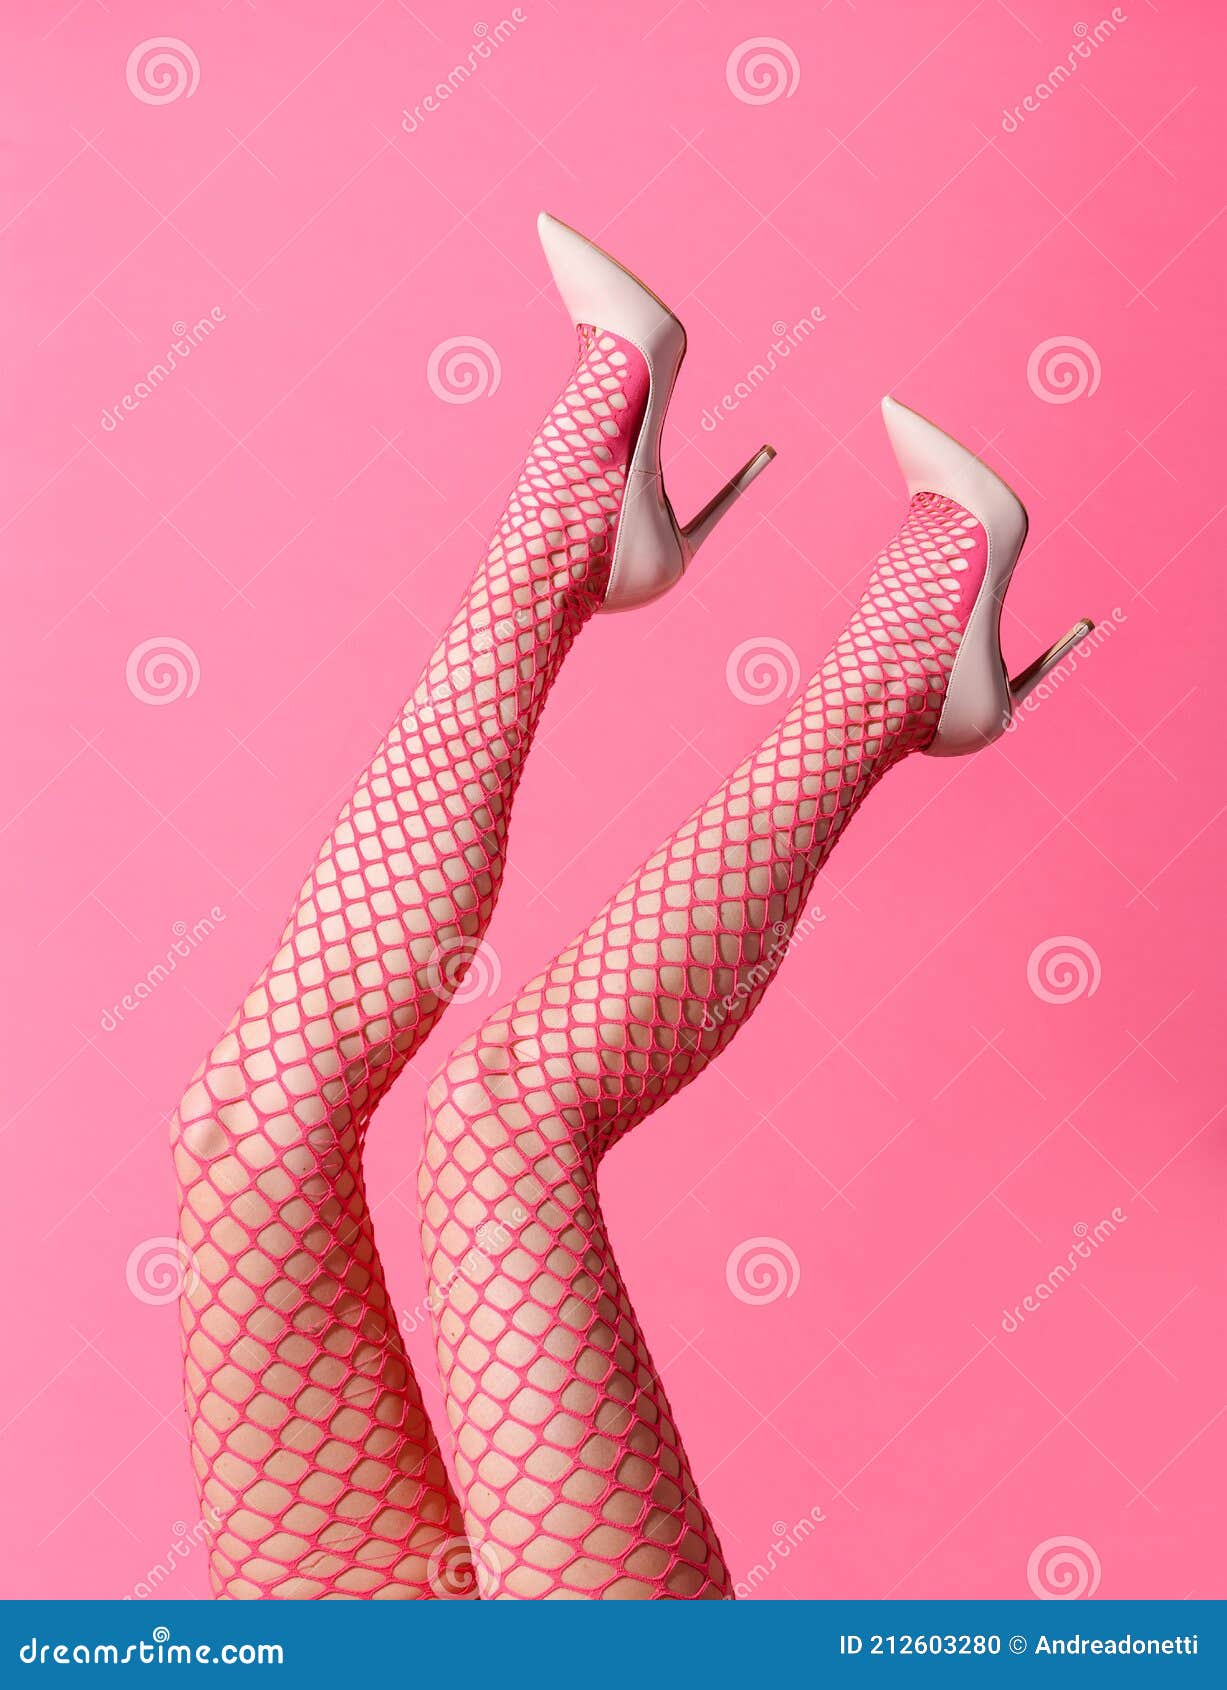 639 Sexy Feet Stockings Stock Photos